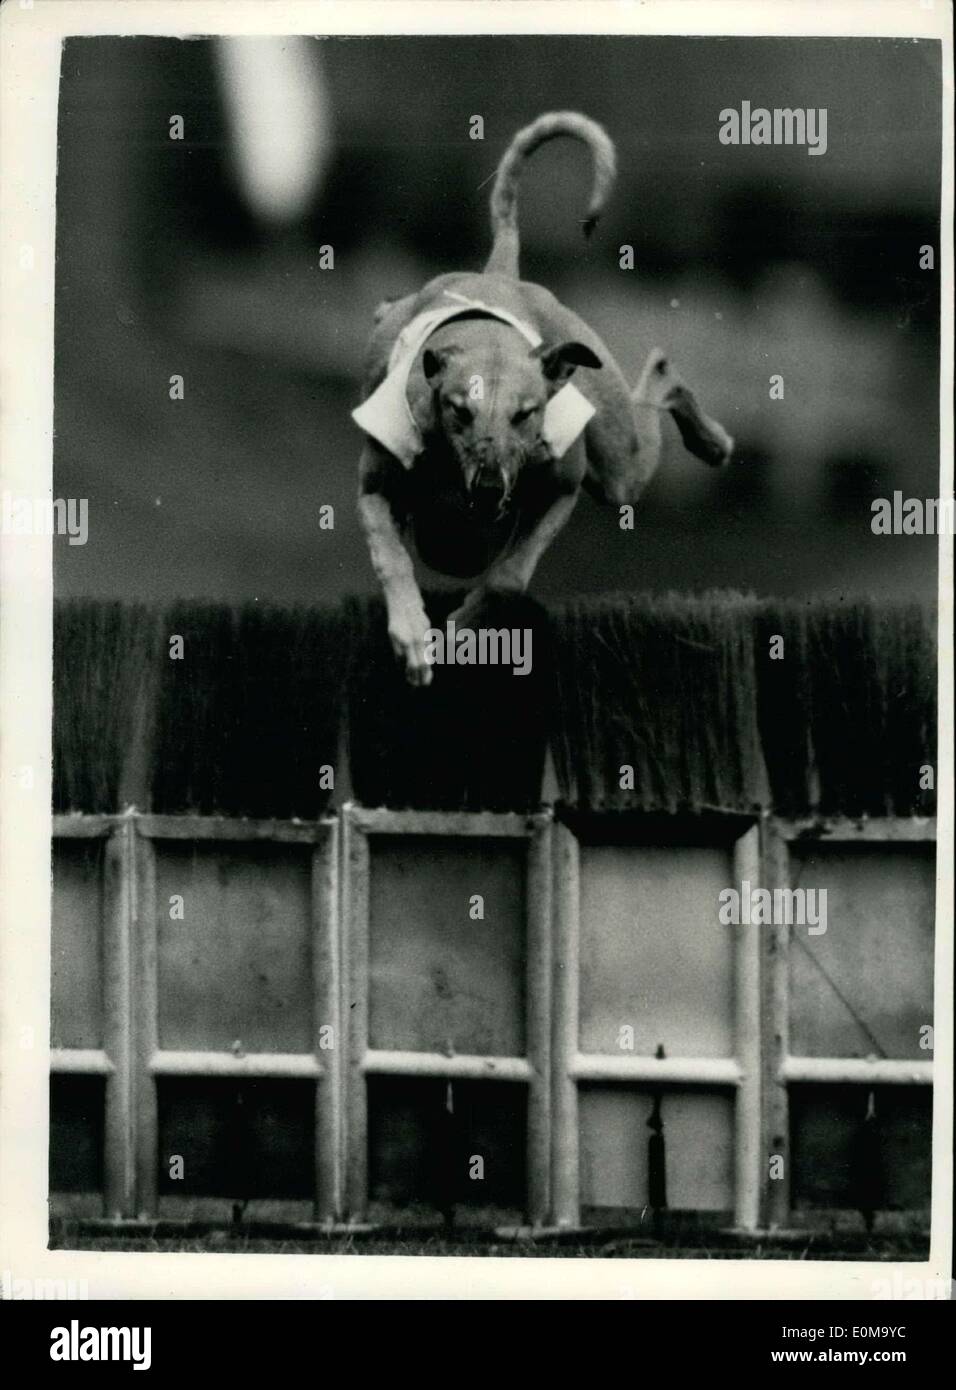 27. April 1954 - wie Hunde springen um zu gewinnen - bei 45 mph Greyhound Trials in Wimbledon: Foto zeigt frontal Blick auf '' ordentlich Platz '' springen über die Hürde - 45 mph - während der Greyhound-Trials in Wimbledon. Bild umstellt mit einer "Long Tom" Kamera mit einem 50-Zoll-Objektiv ausgestattet. Stockfoto